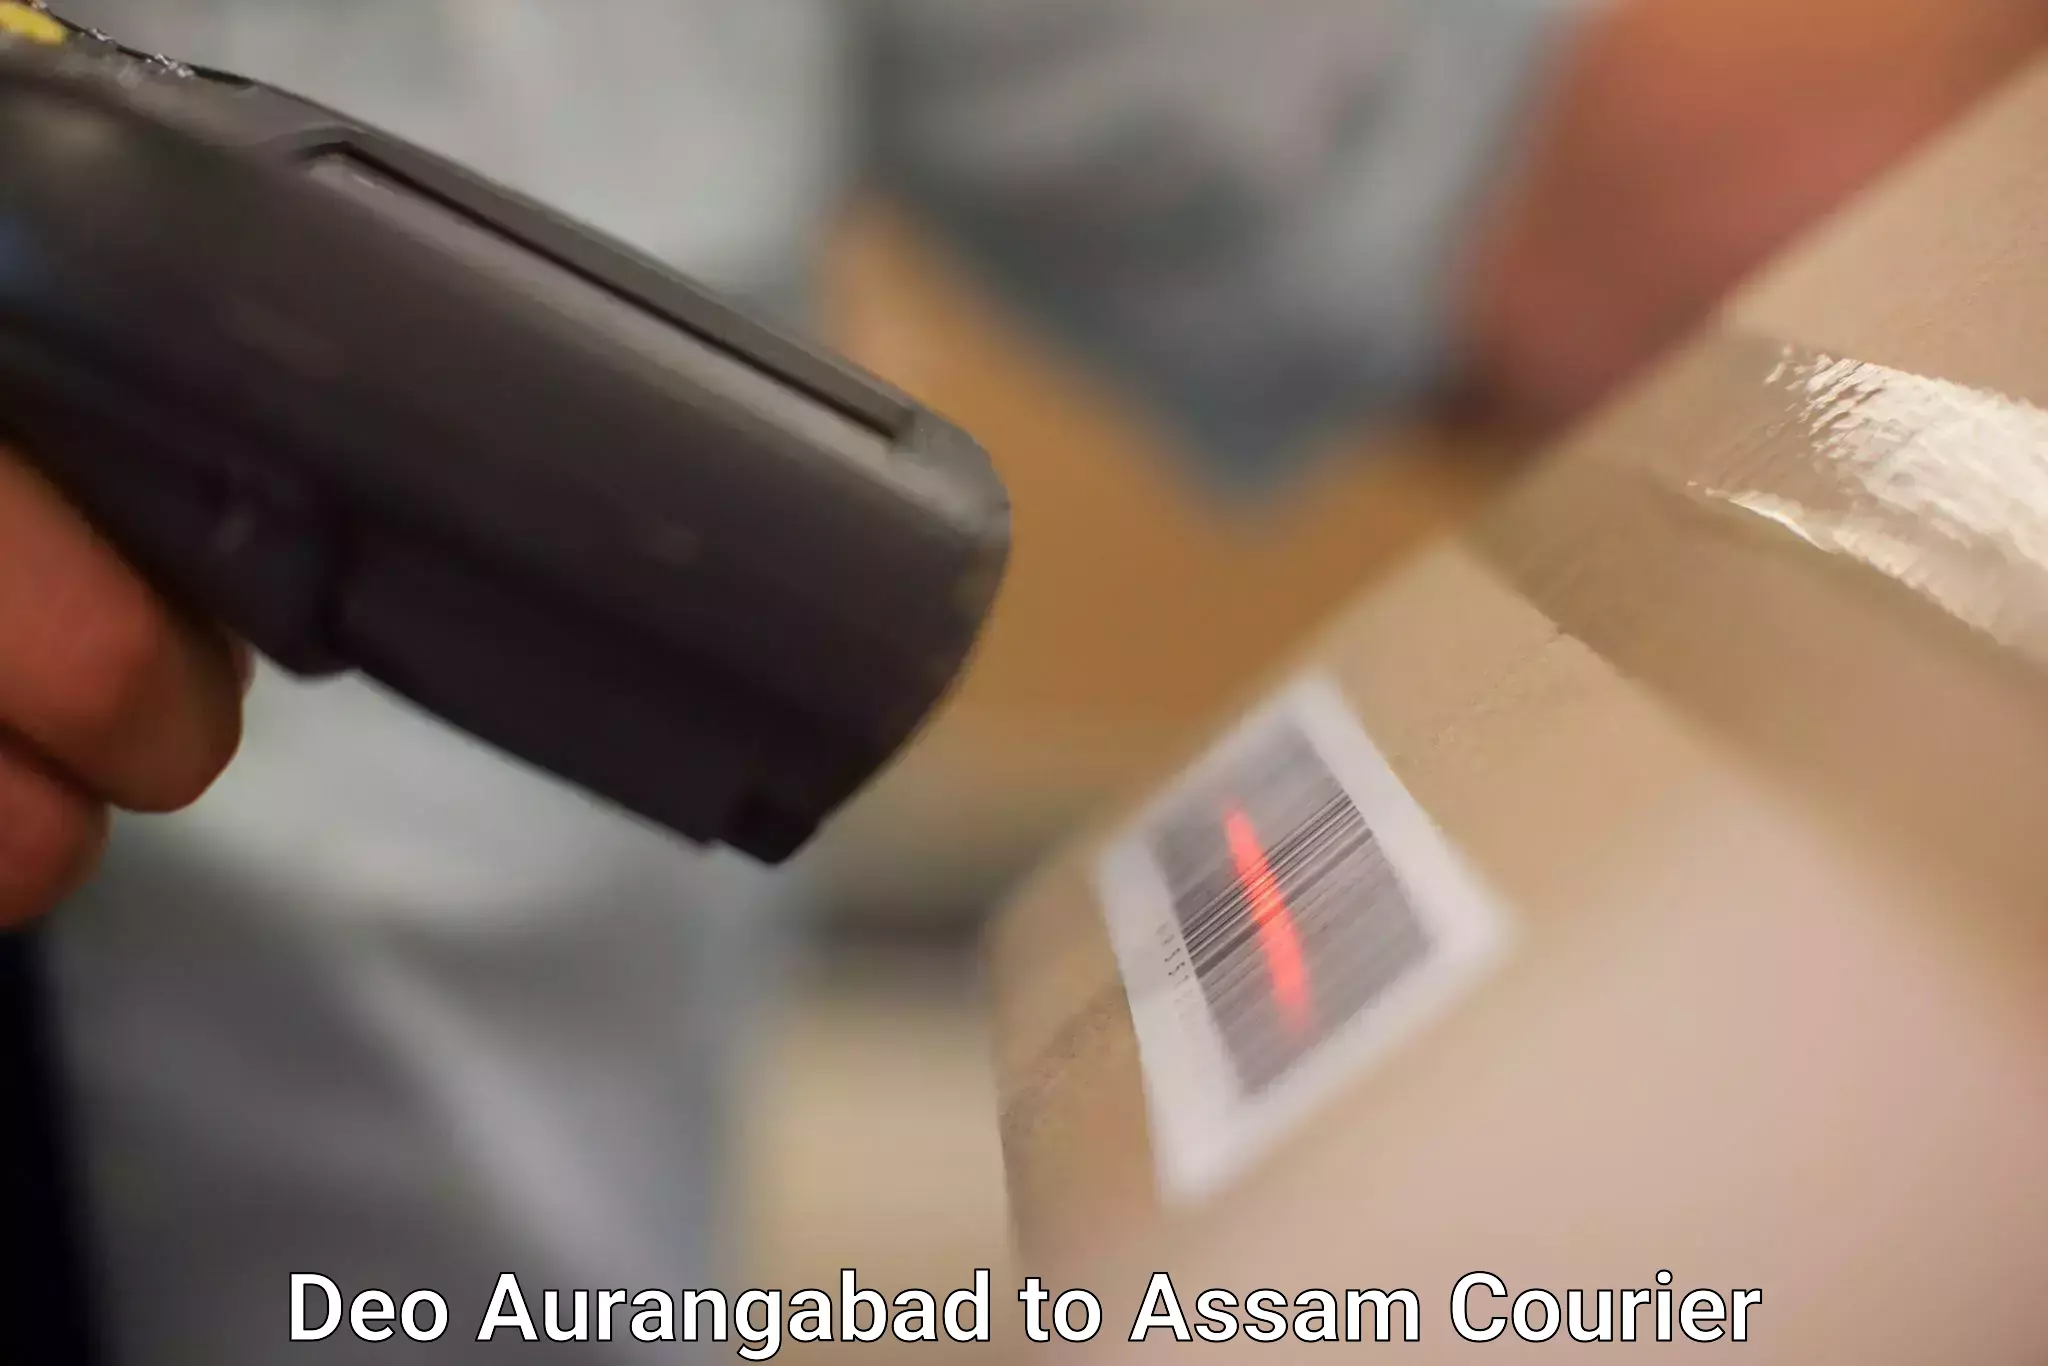 Seamless shipping service Deo Aurangabad to Assam